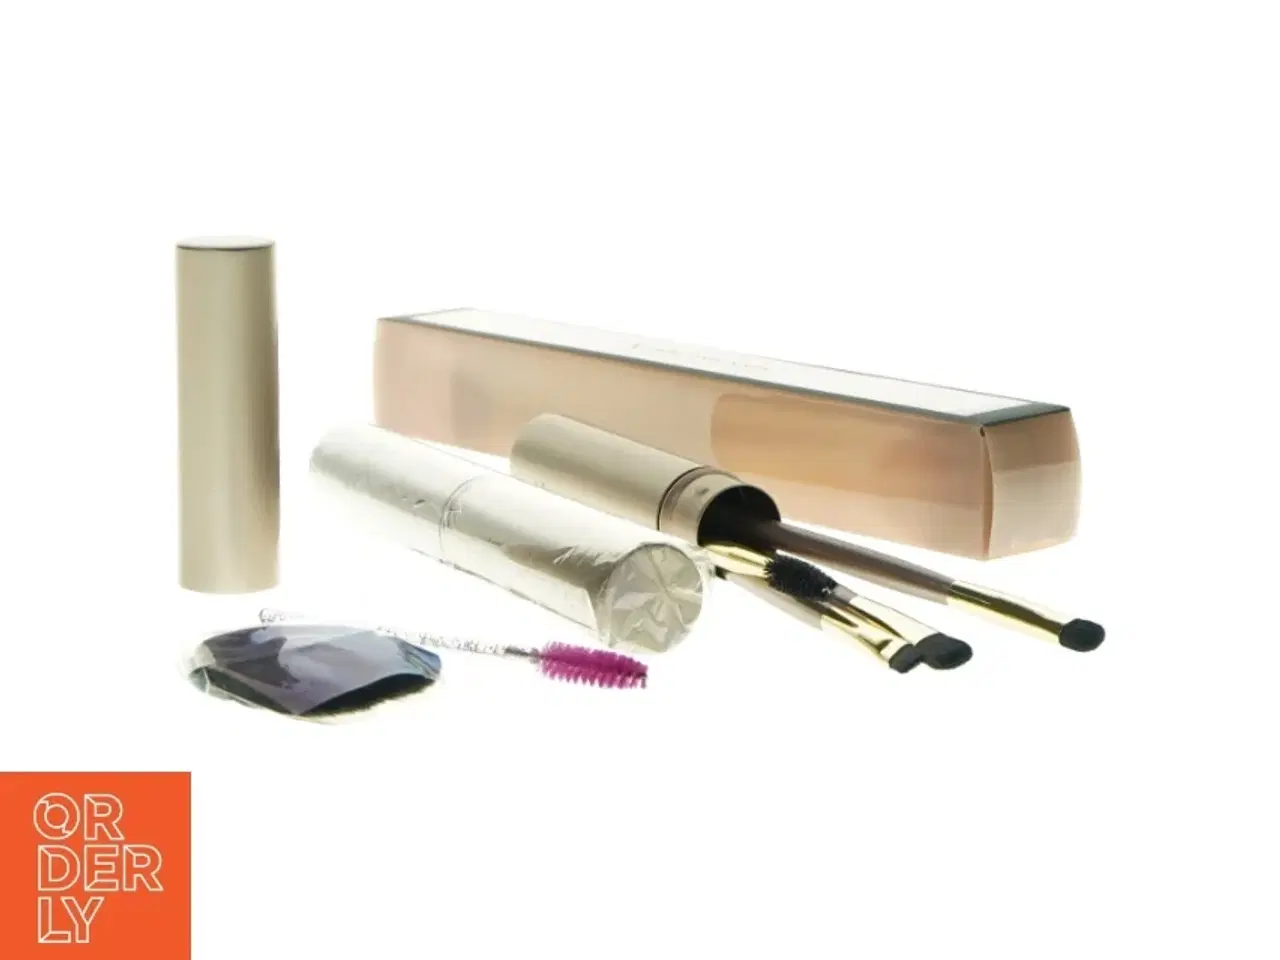 Billede 1 - nye Makeup børster fra Max factor